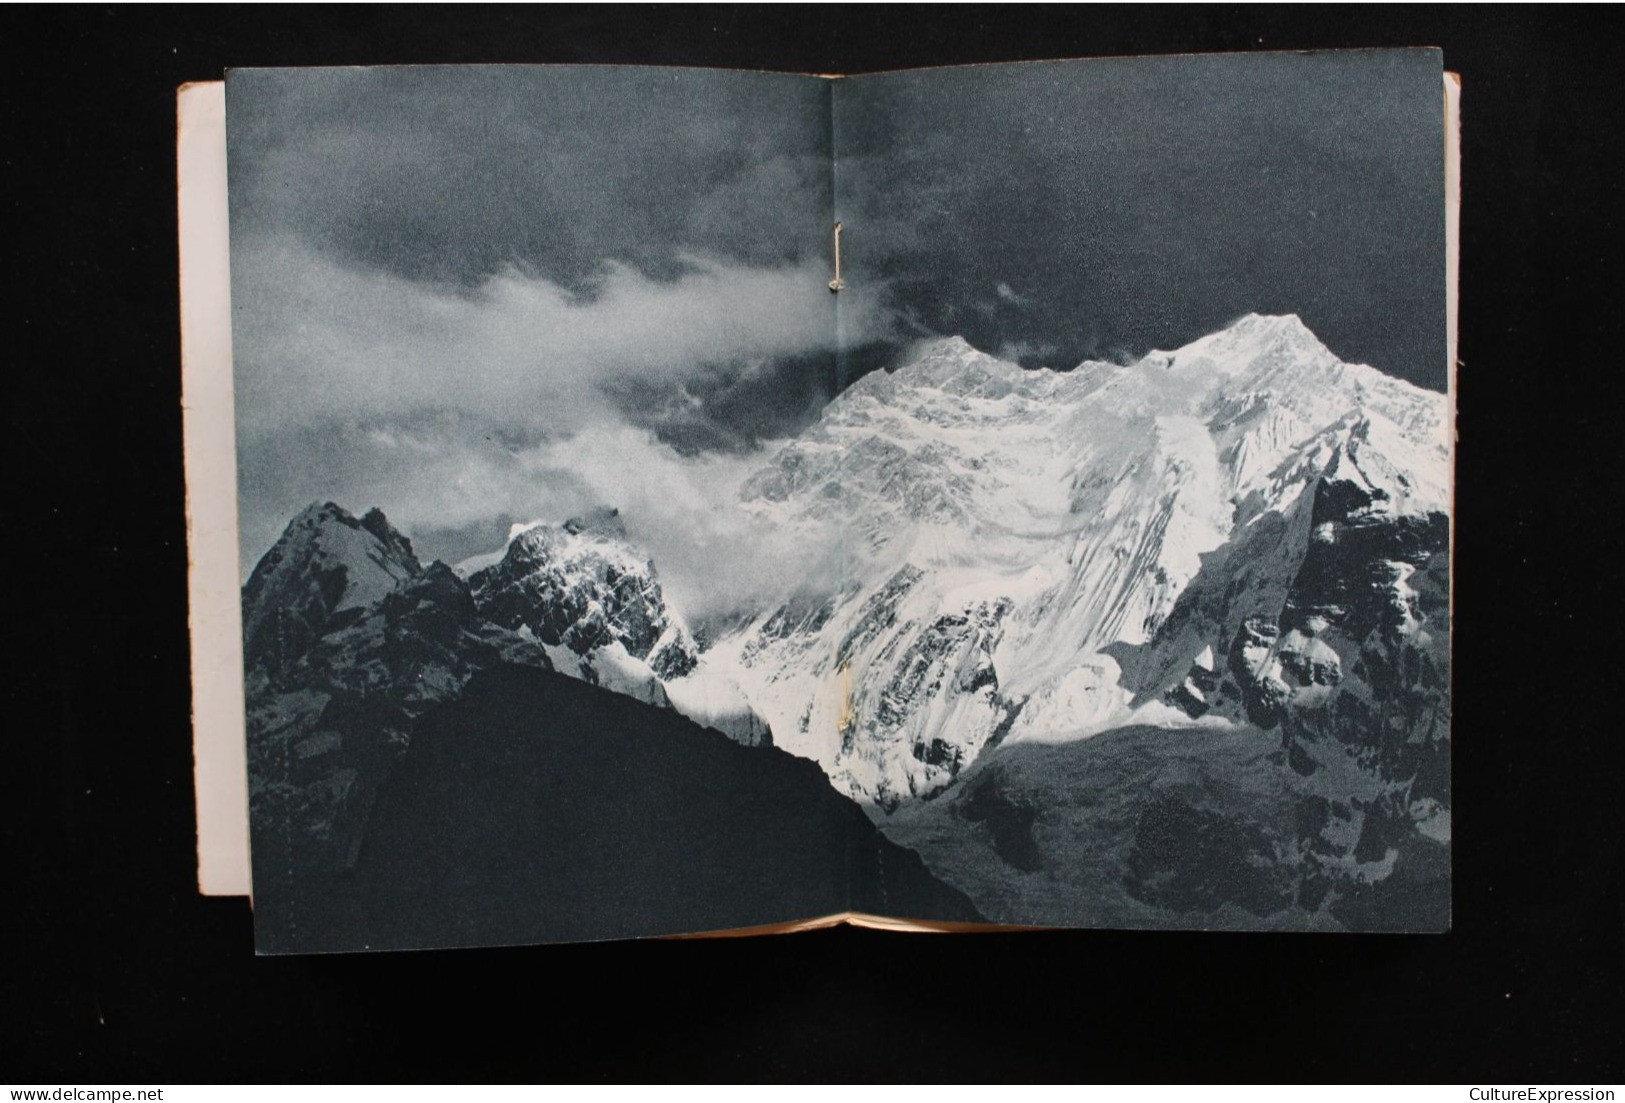 Annapurna premier 8.000 (Arthaud, collection Sempervivum, 1951), roman autobiographique de Maurice Herzog